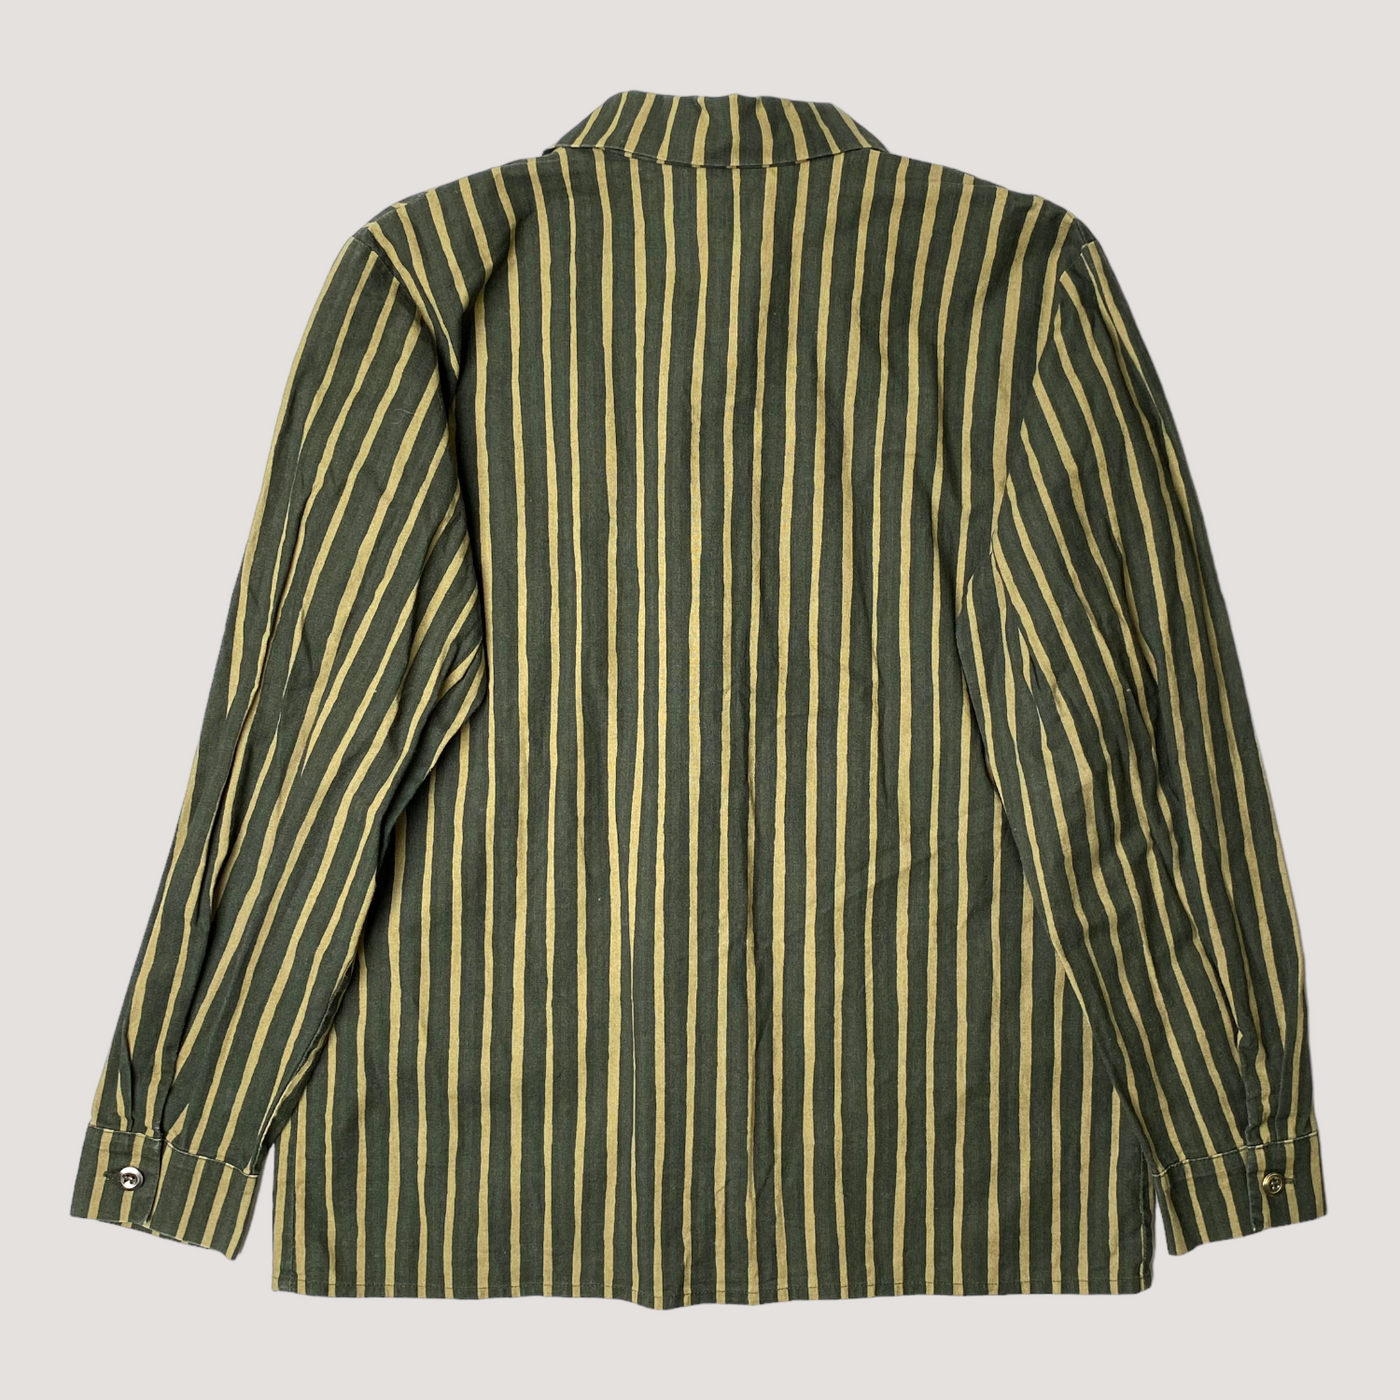 Marimekko jokapoika shirt, green/beige | 140cm